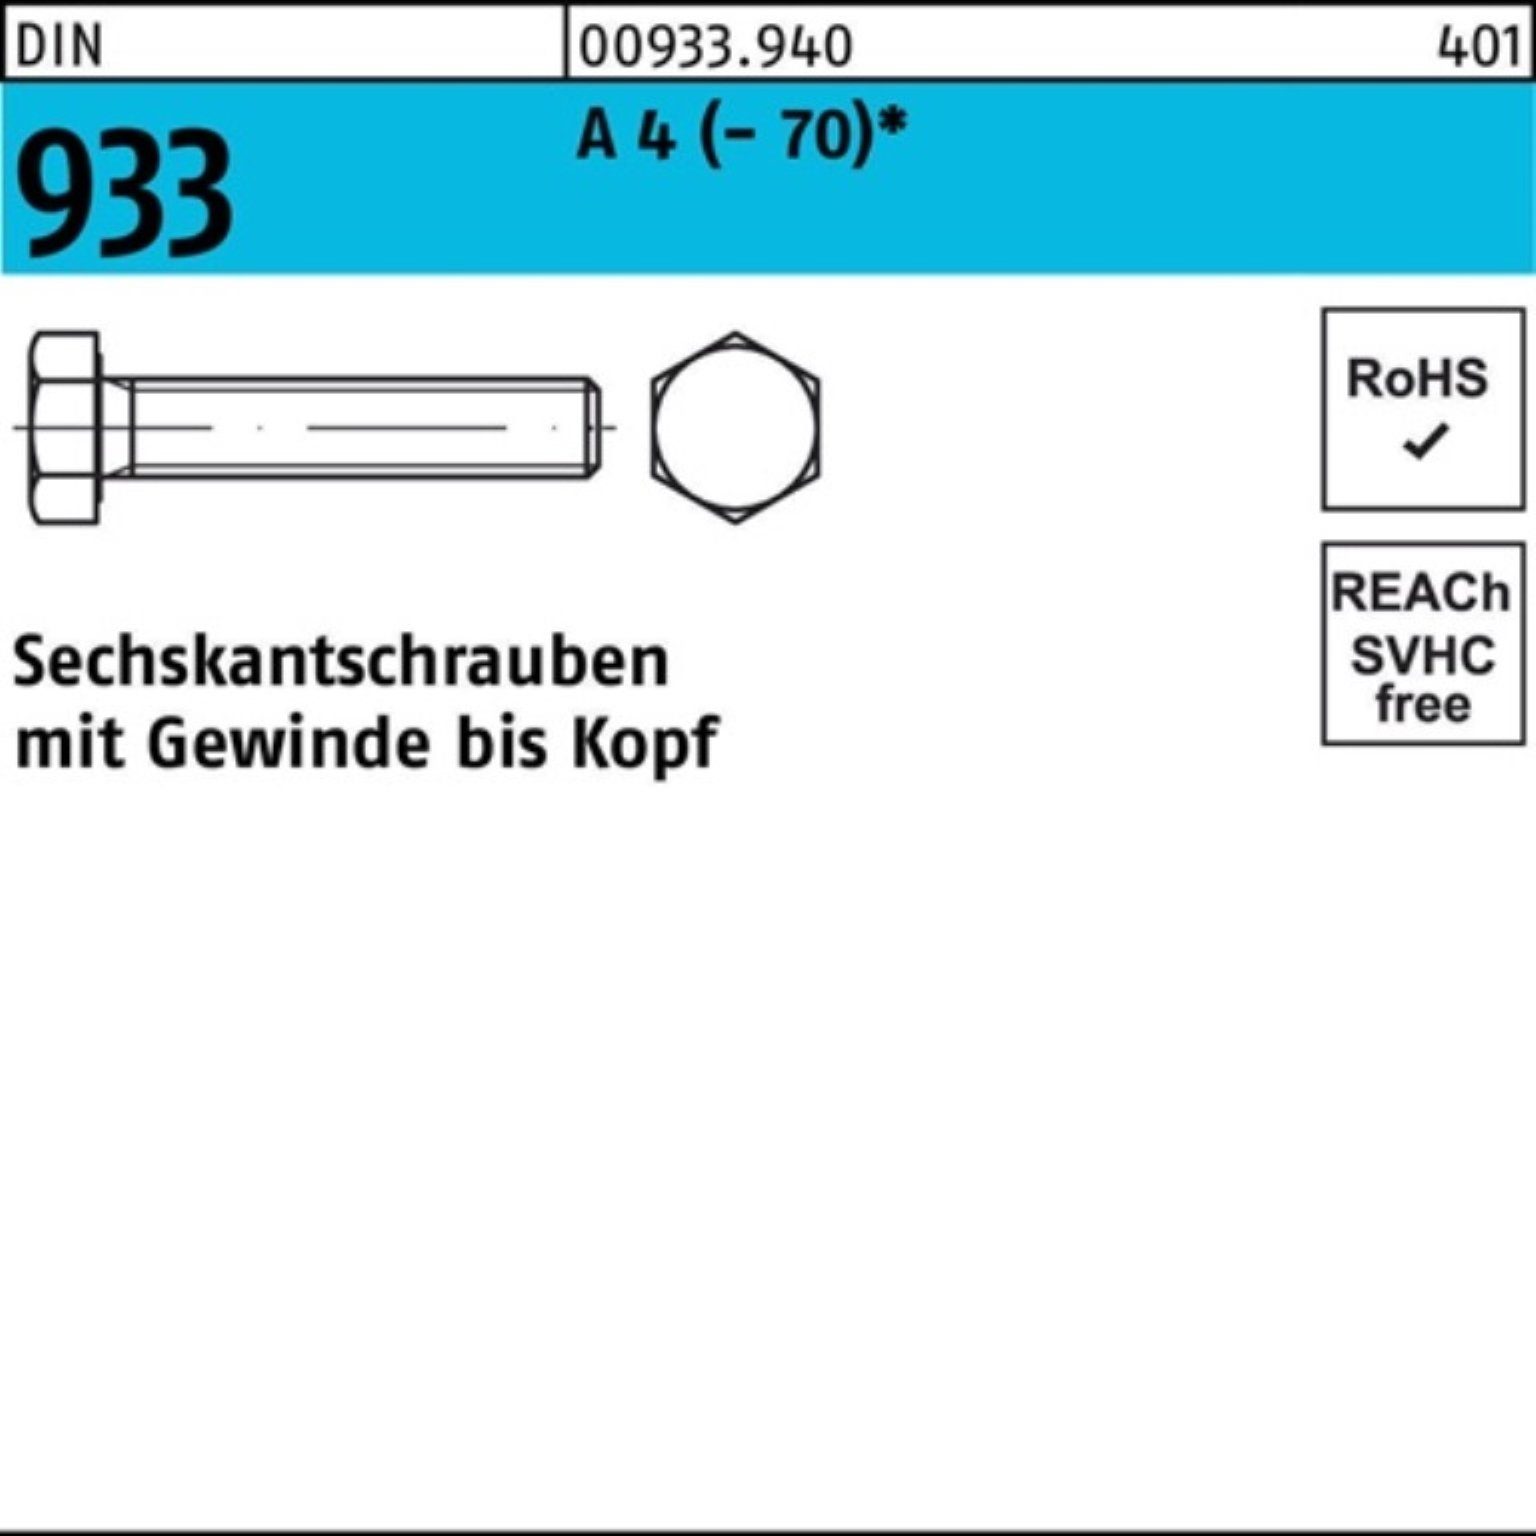 A Sechskantschraube 933 M10x Pack Stück 100er D 55 50 Reyher Sechskantschraube VG 4 DIN (70)